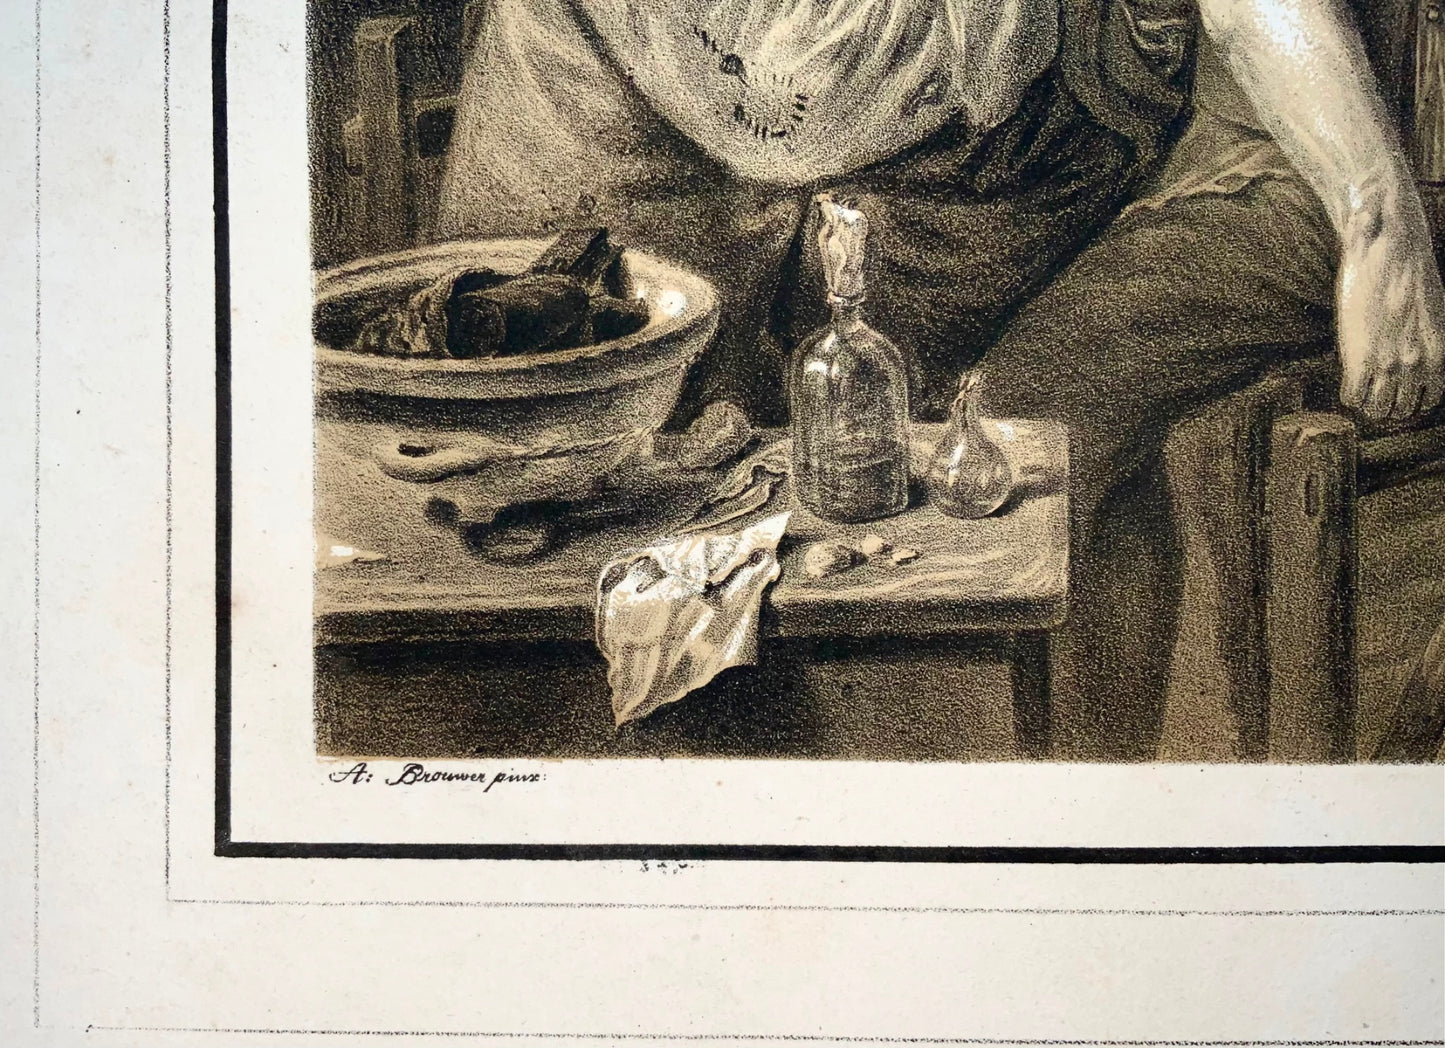 1810c Médecine, Chirurgien, N. Strixner d'après A. Brouwer, incunables de lithographie 